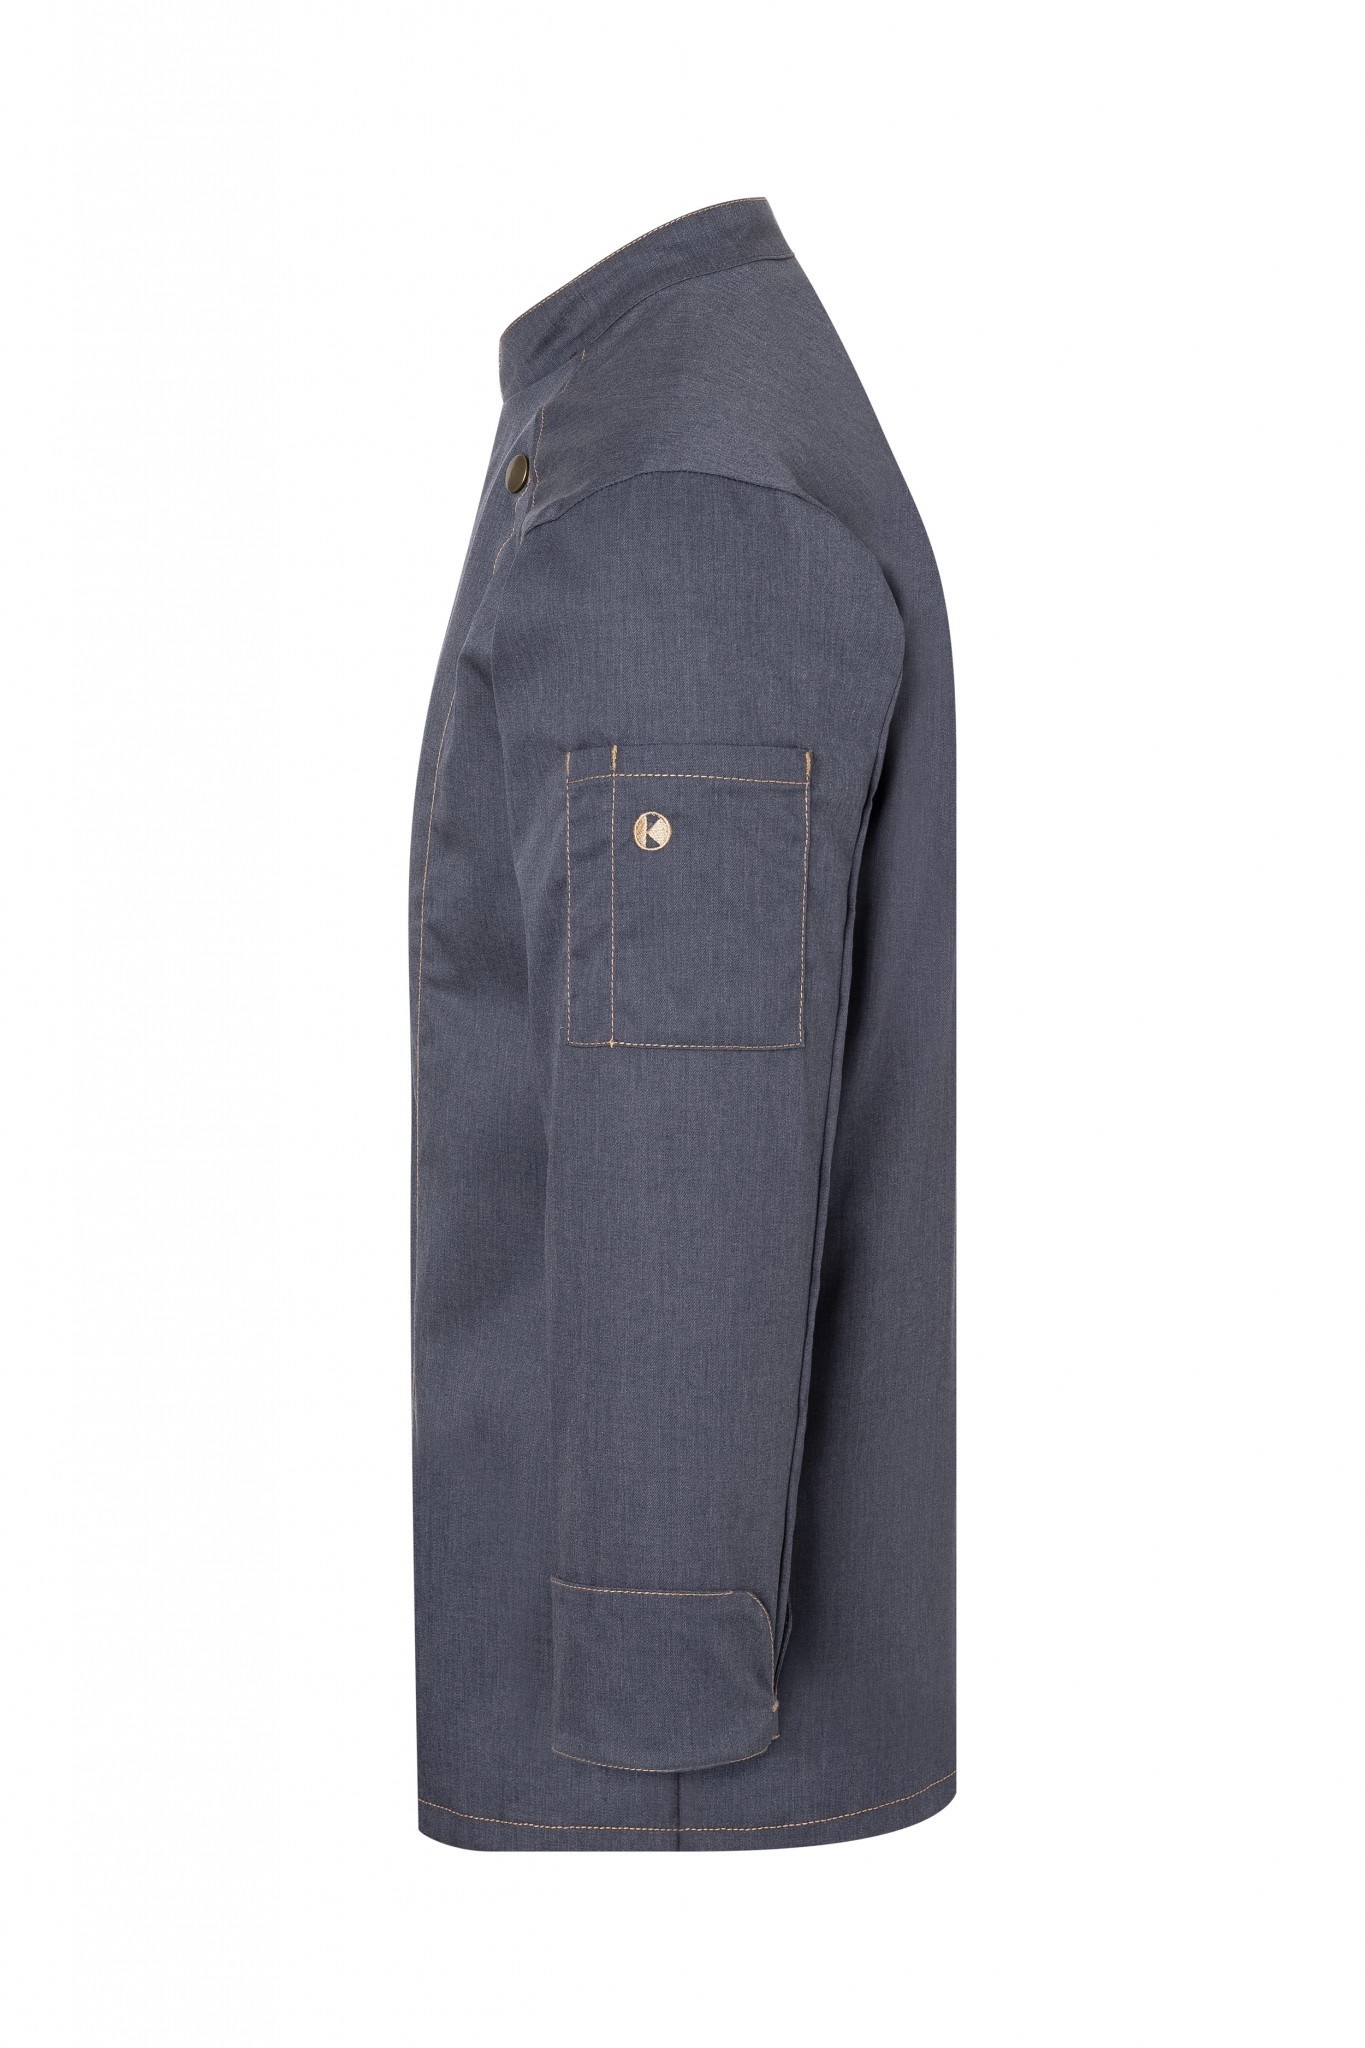 Kochjacke Jeans-Style | Vintage Black | 65% Polyester / 35% Baumwolle | Erhältlich in 10 Größen